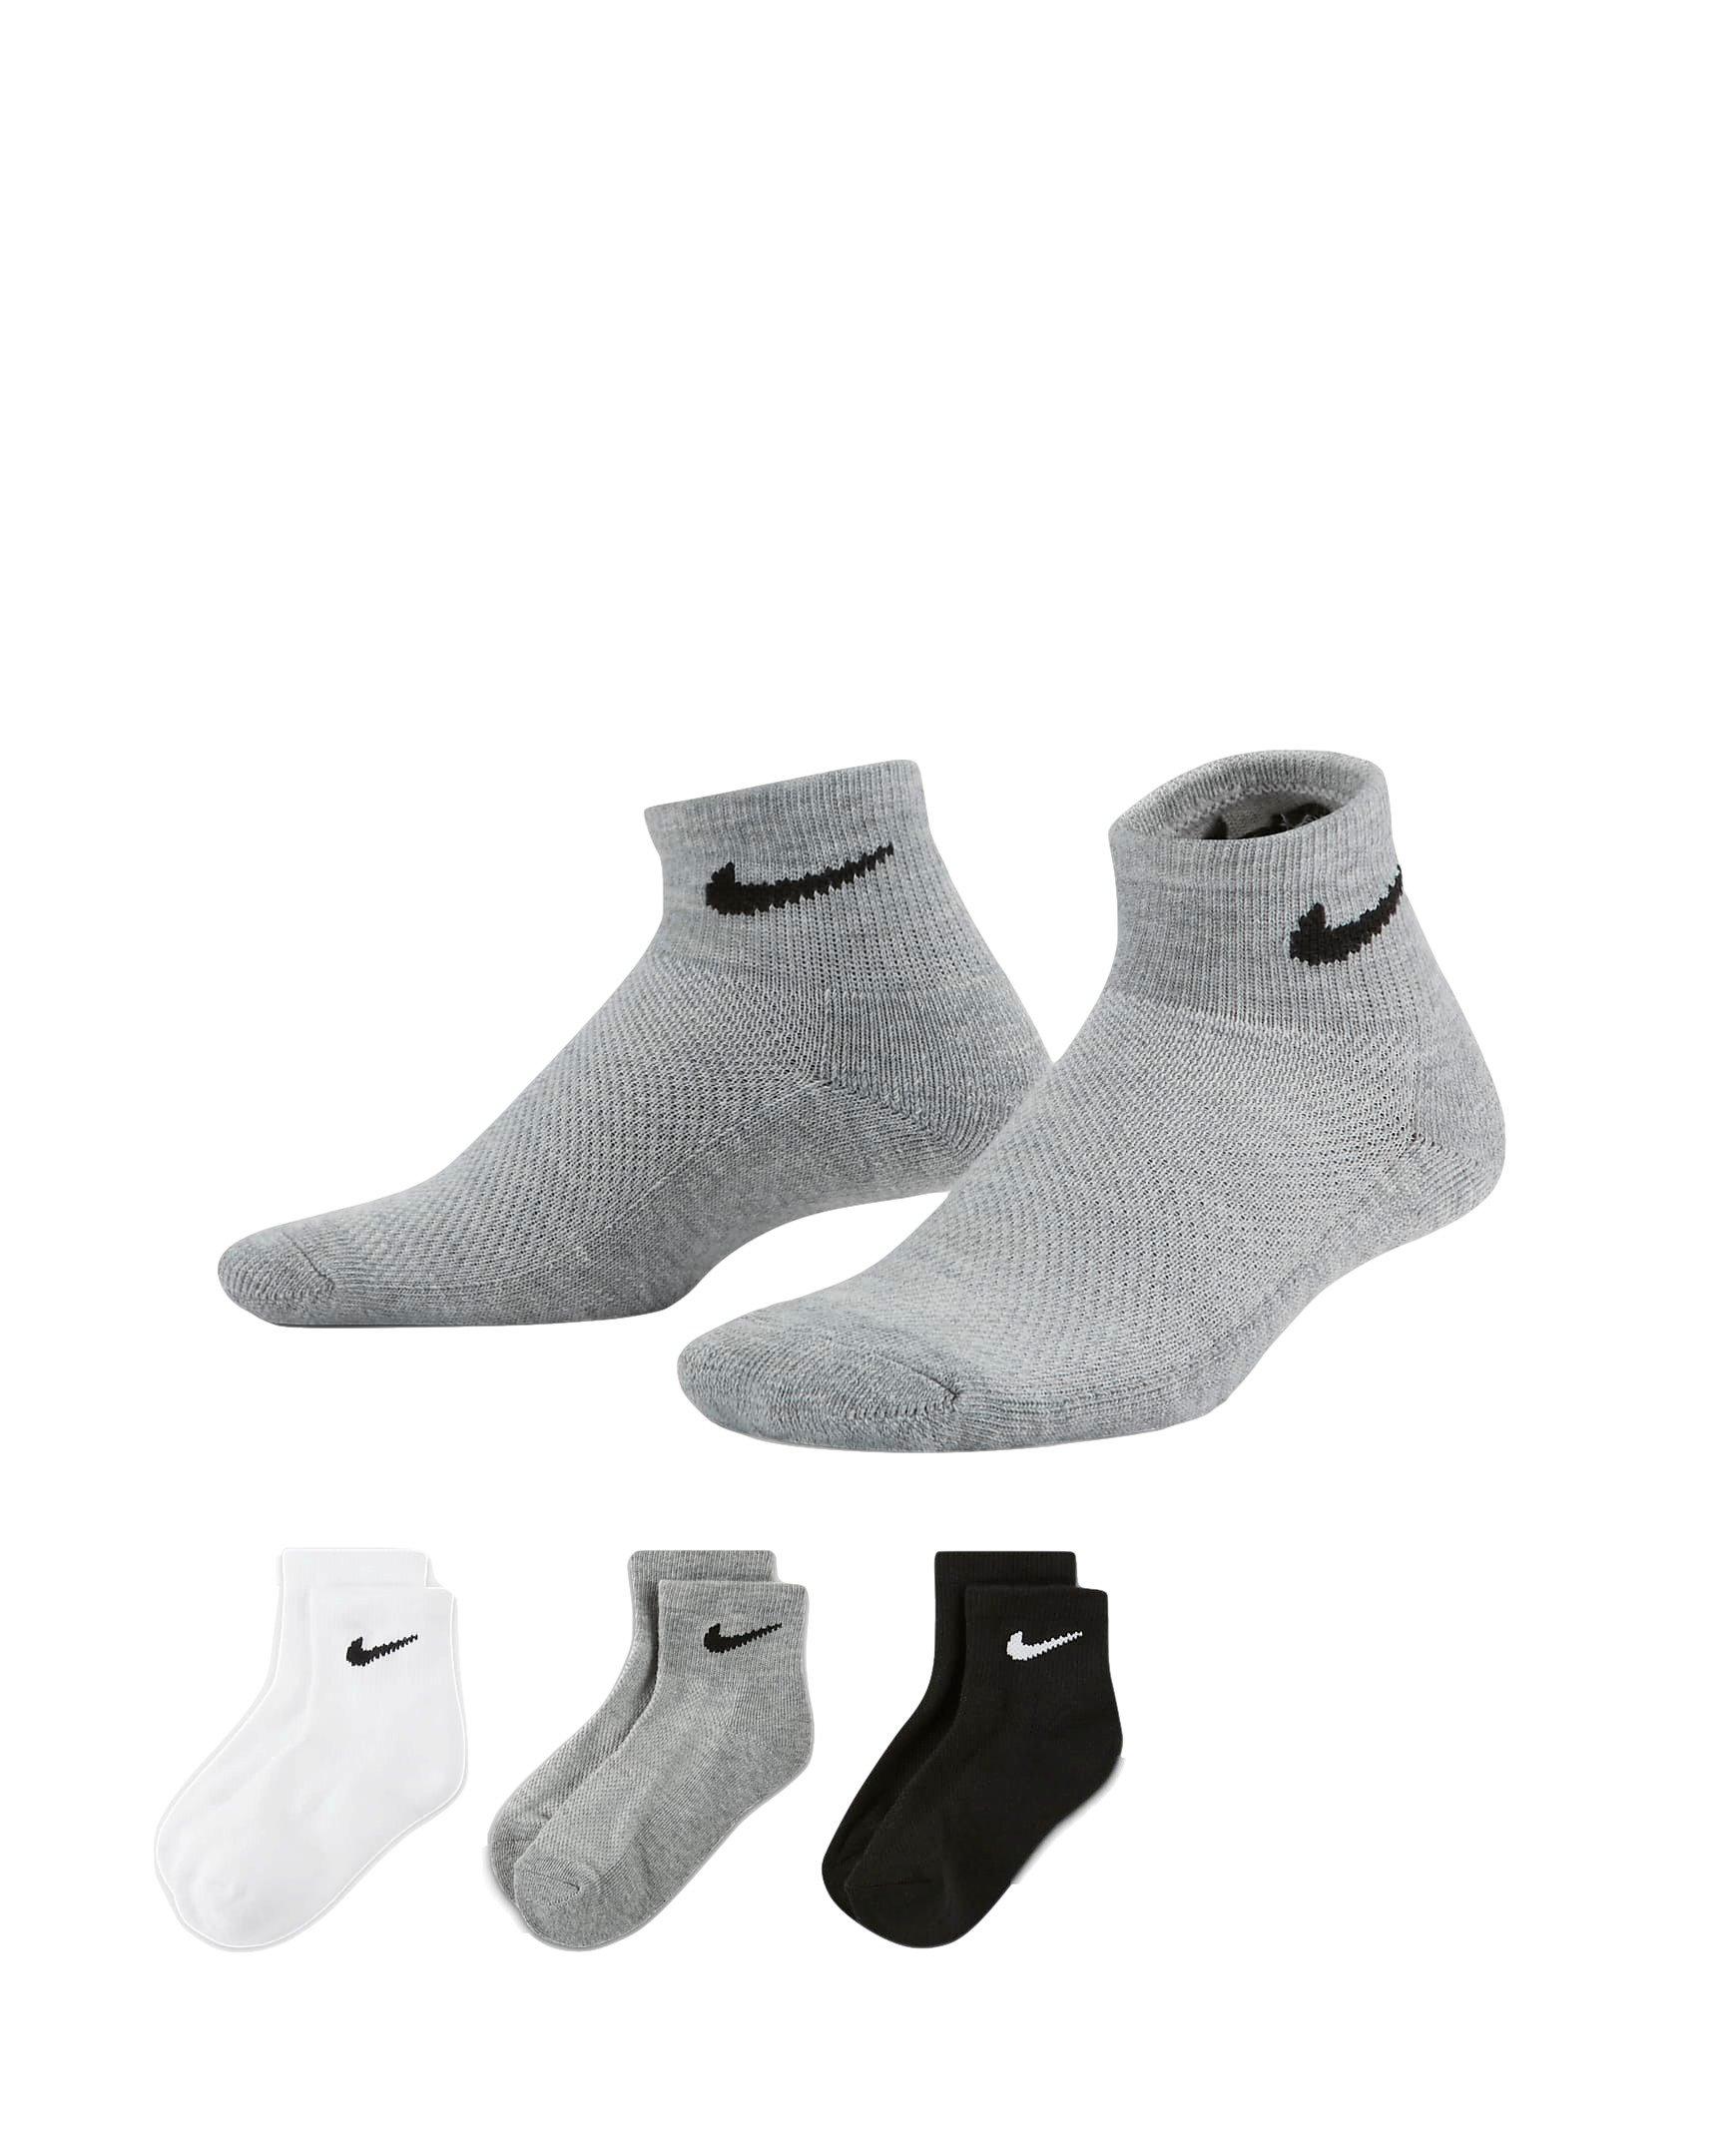 hibbett sports nike socks